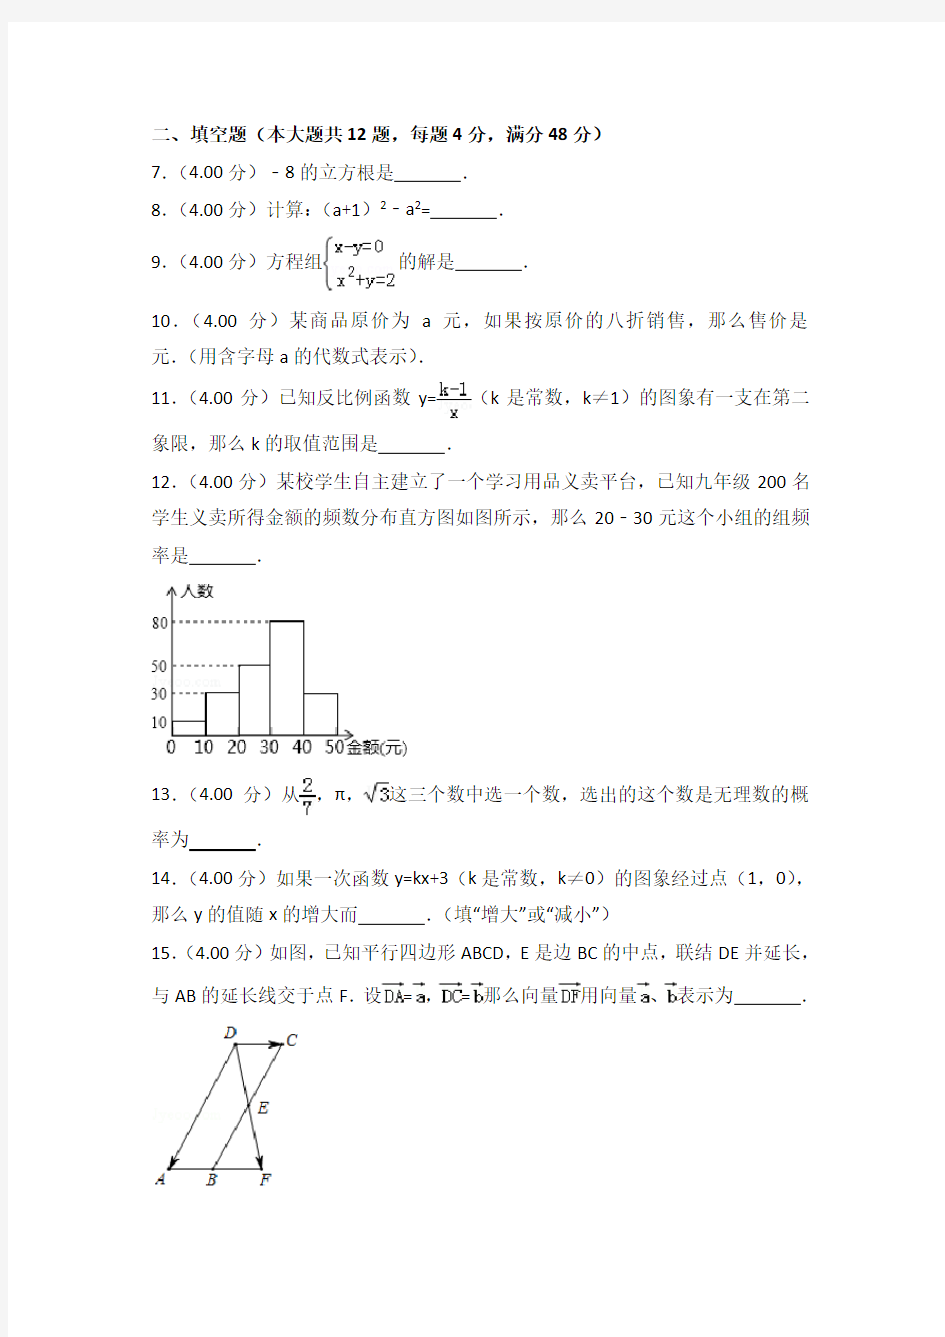 2018年上海市中考数学真题试题(含答案)